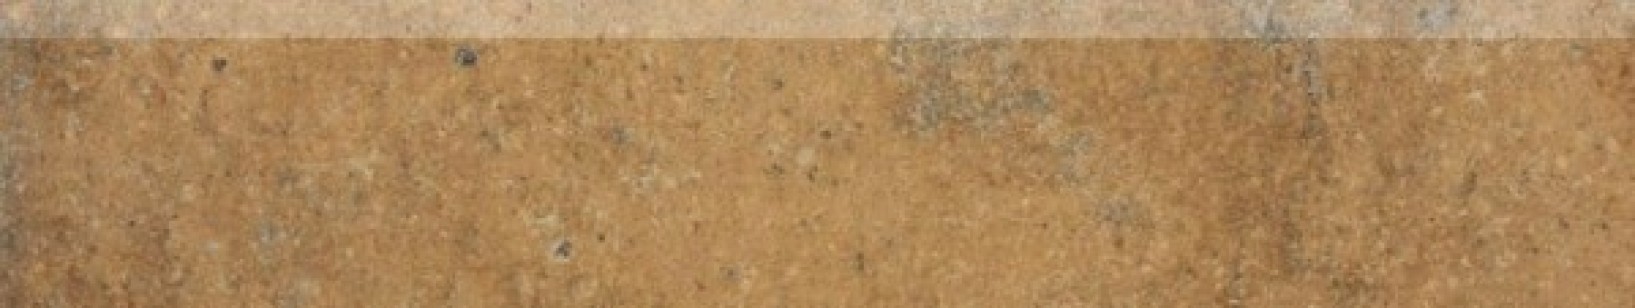 Плинтус Rako Siena коричневый 8.5x45 DSAPM664